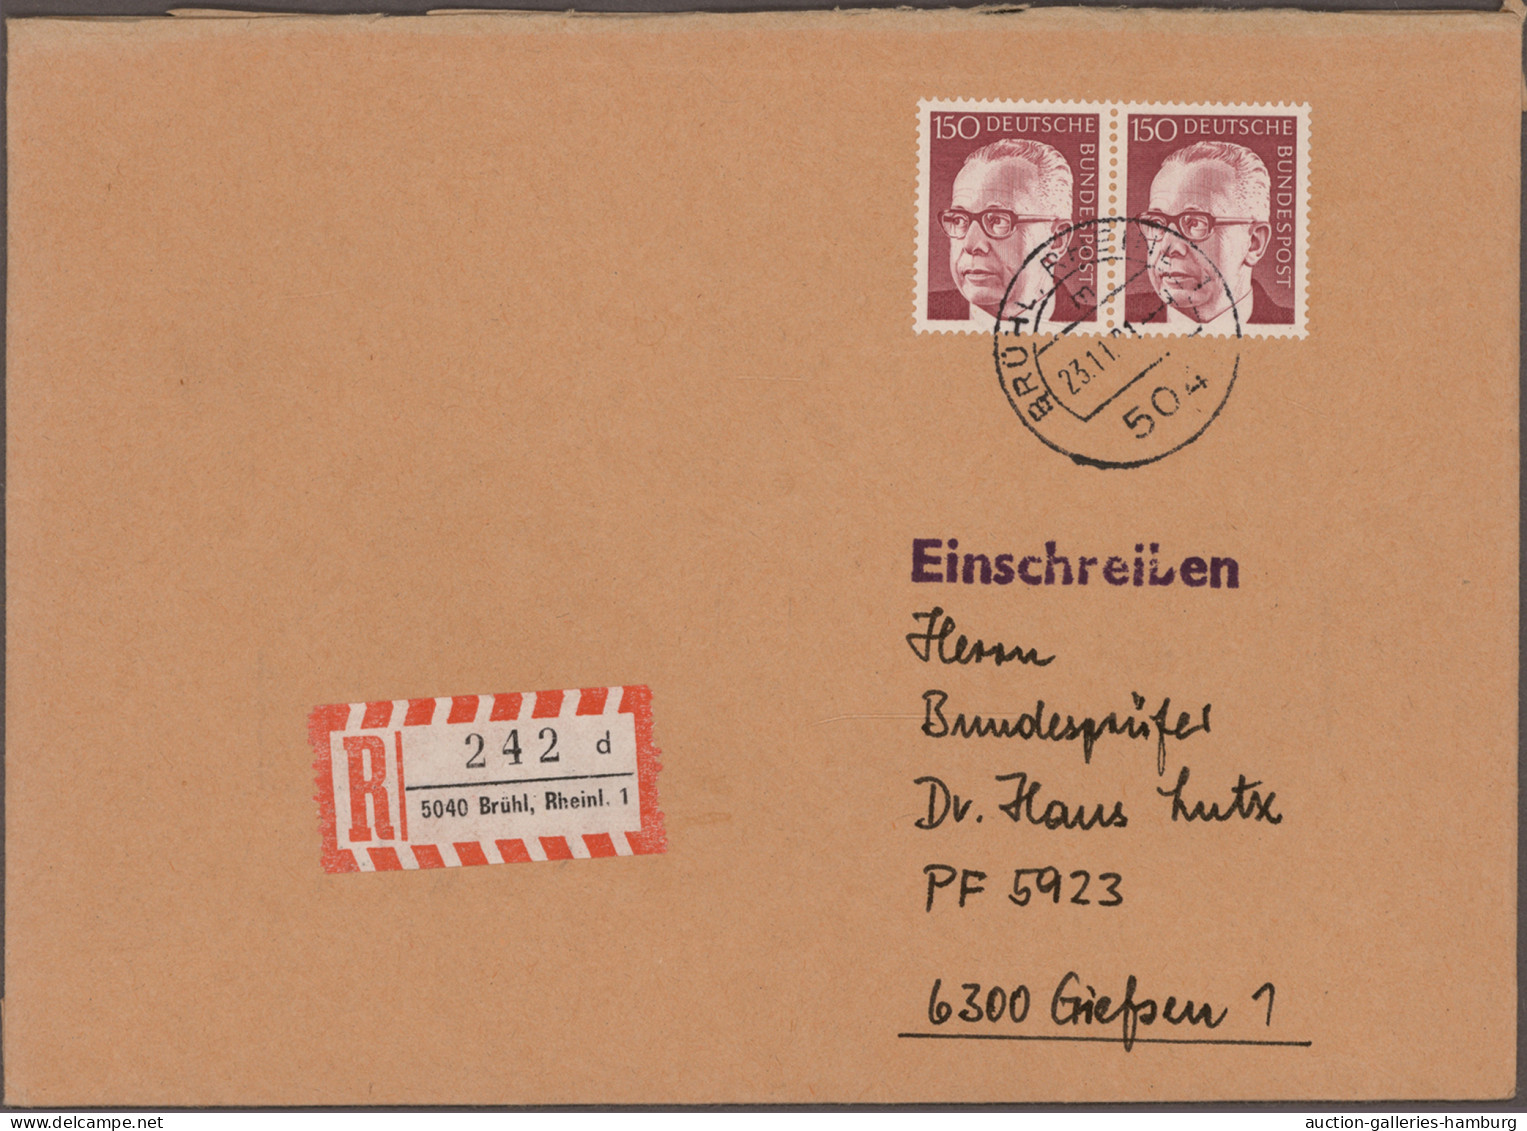 Bundesrepublik Deutschland: 1954/1999, Partie von 86 Briefen und Karten nur mit